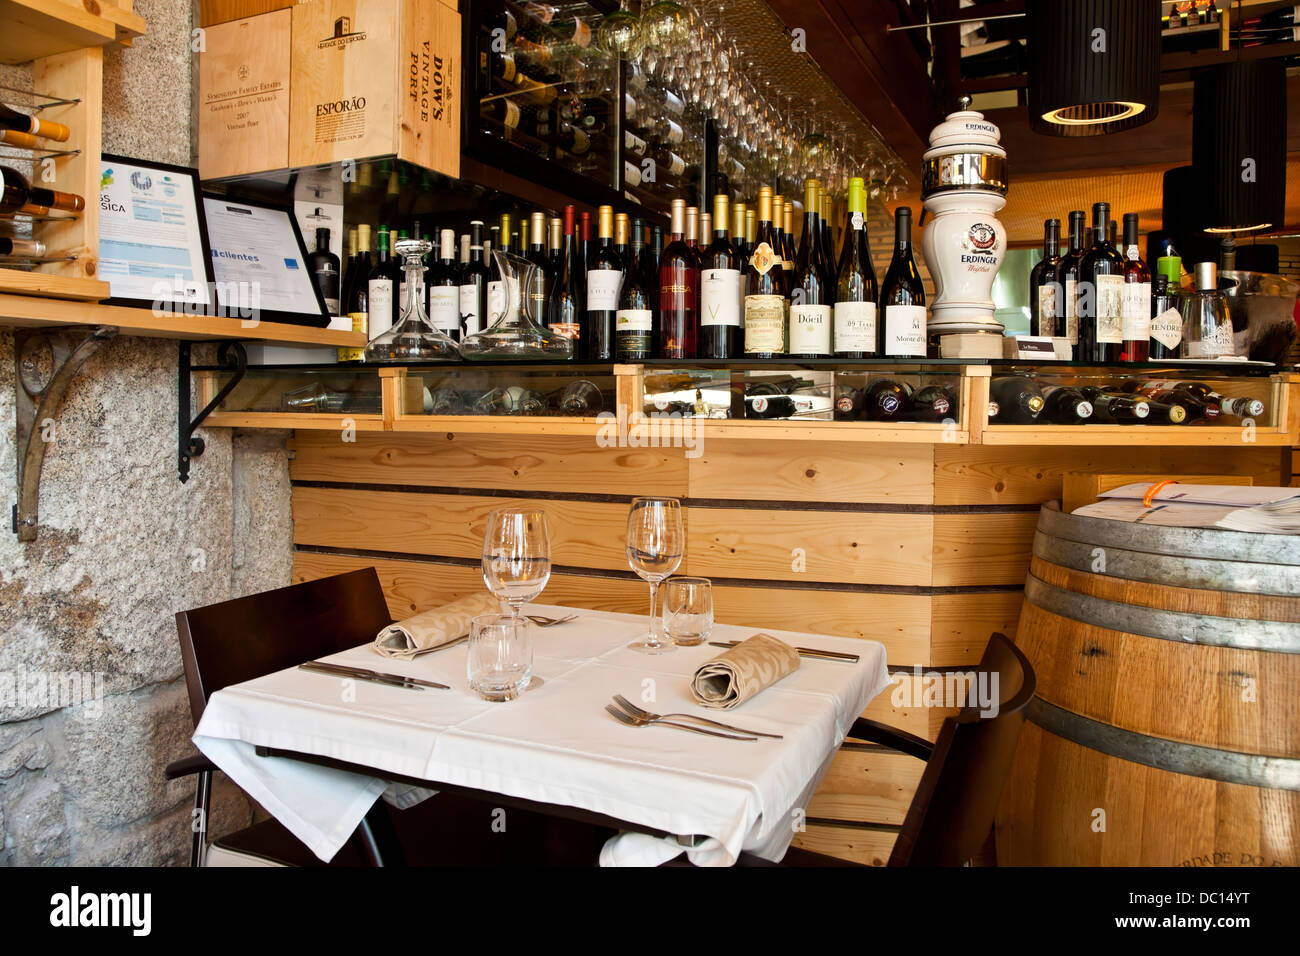 Europe, Portugal, Porto. A wine bar and restaurant in Porto Portugal. Stock Photo